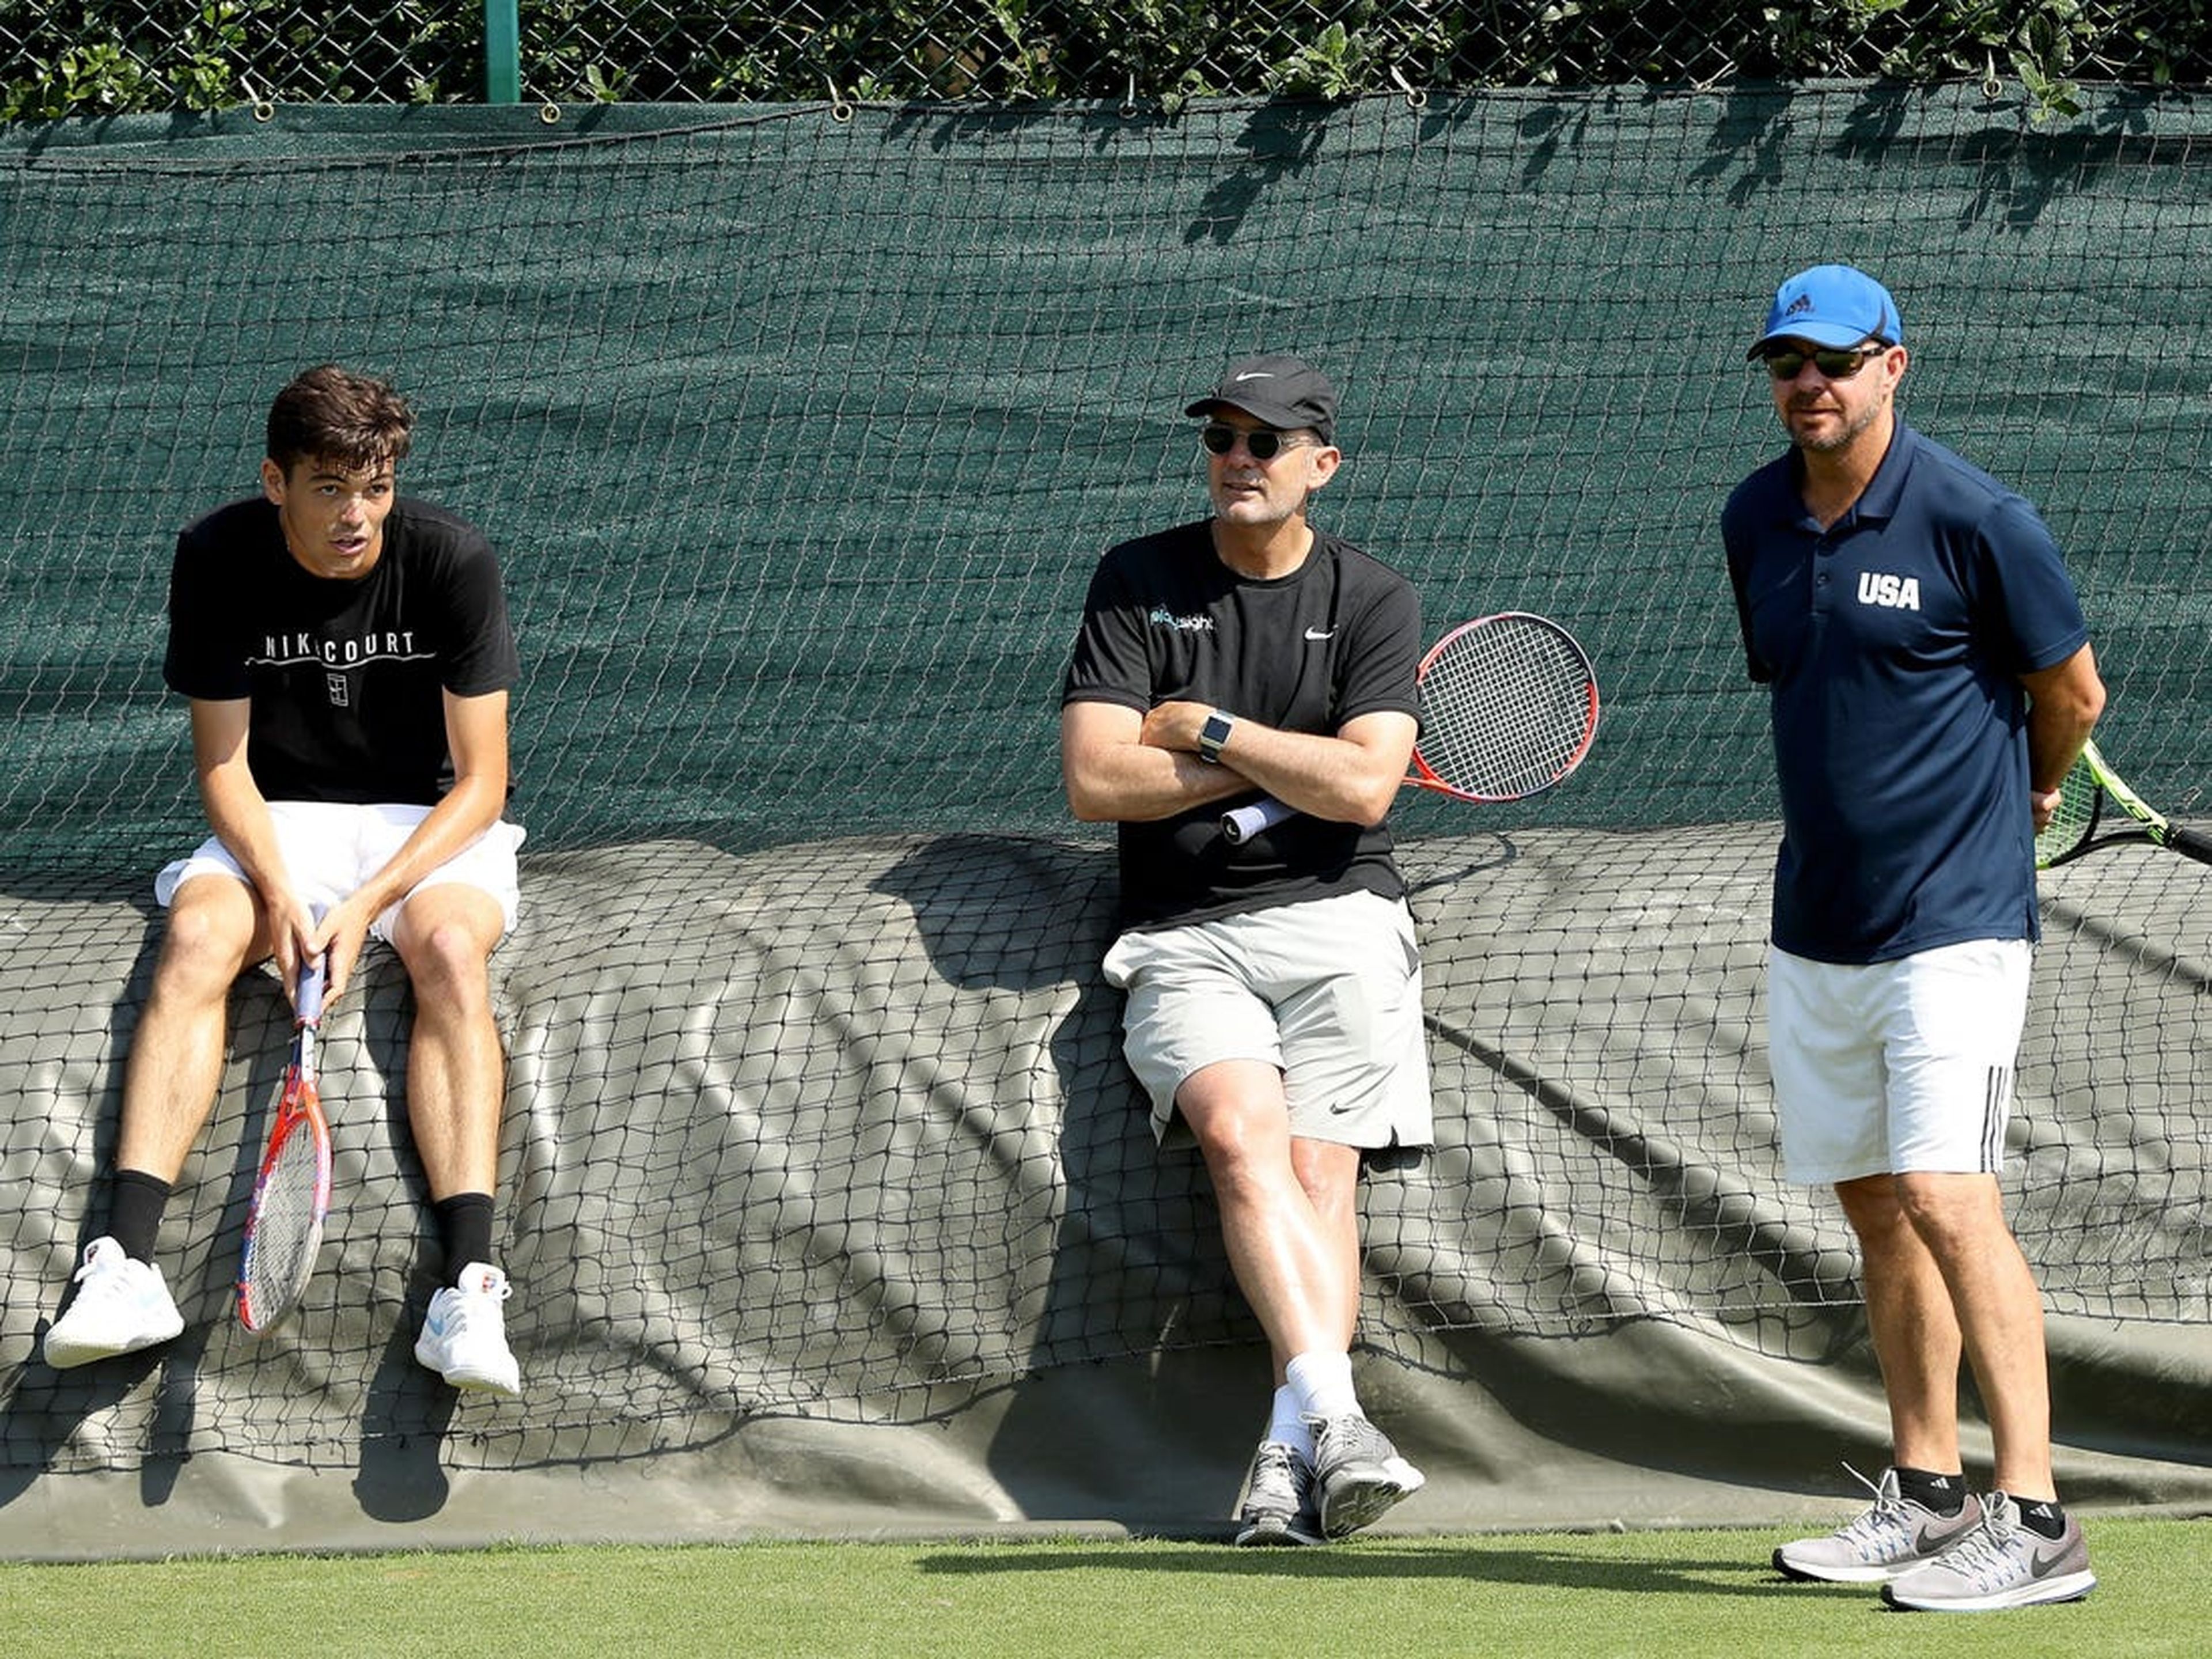 El entrenador David Nainkin (derecha) es el entrenador de tenis masculino del equipo de Estados Unidos para los Juegos Olímpicos de Tokio.